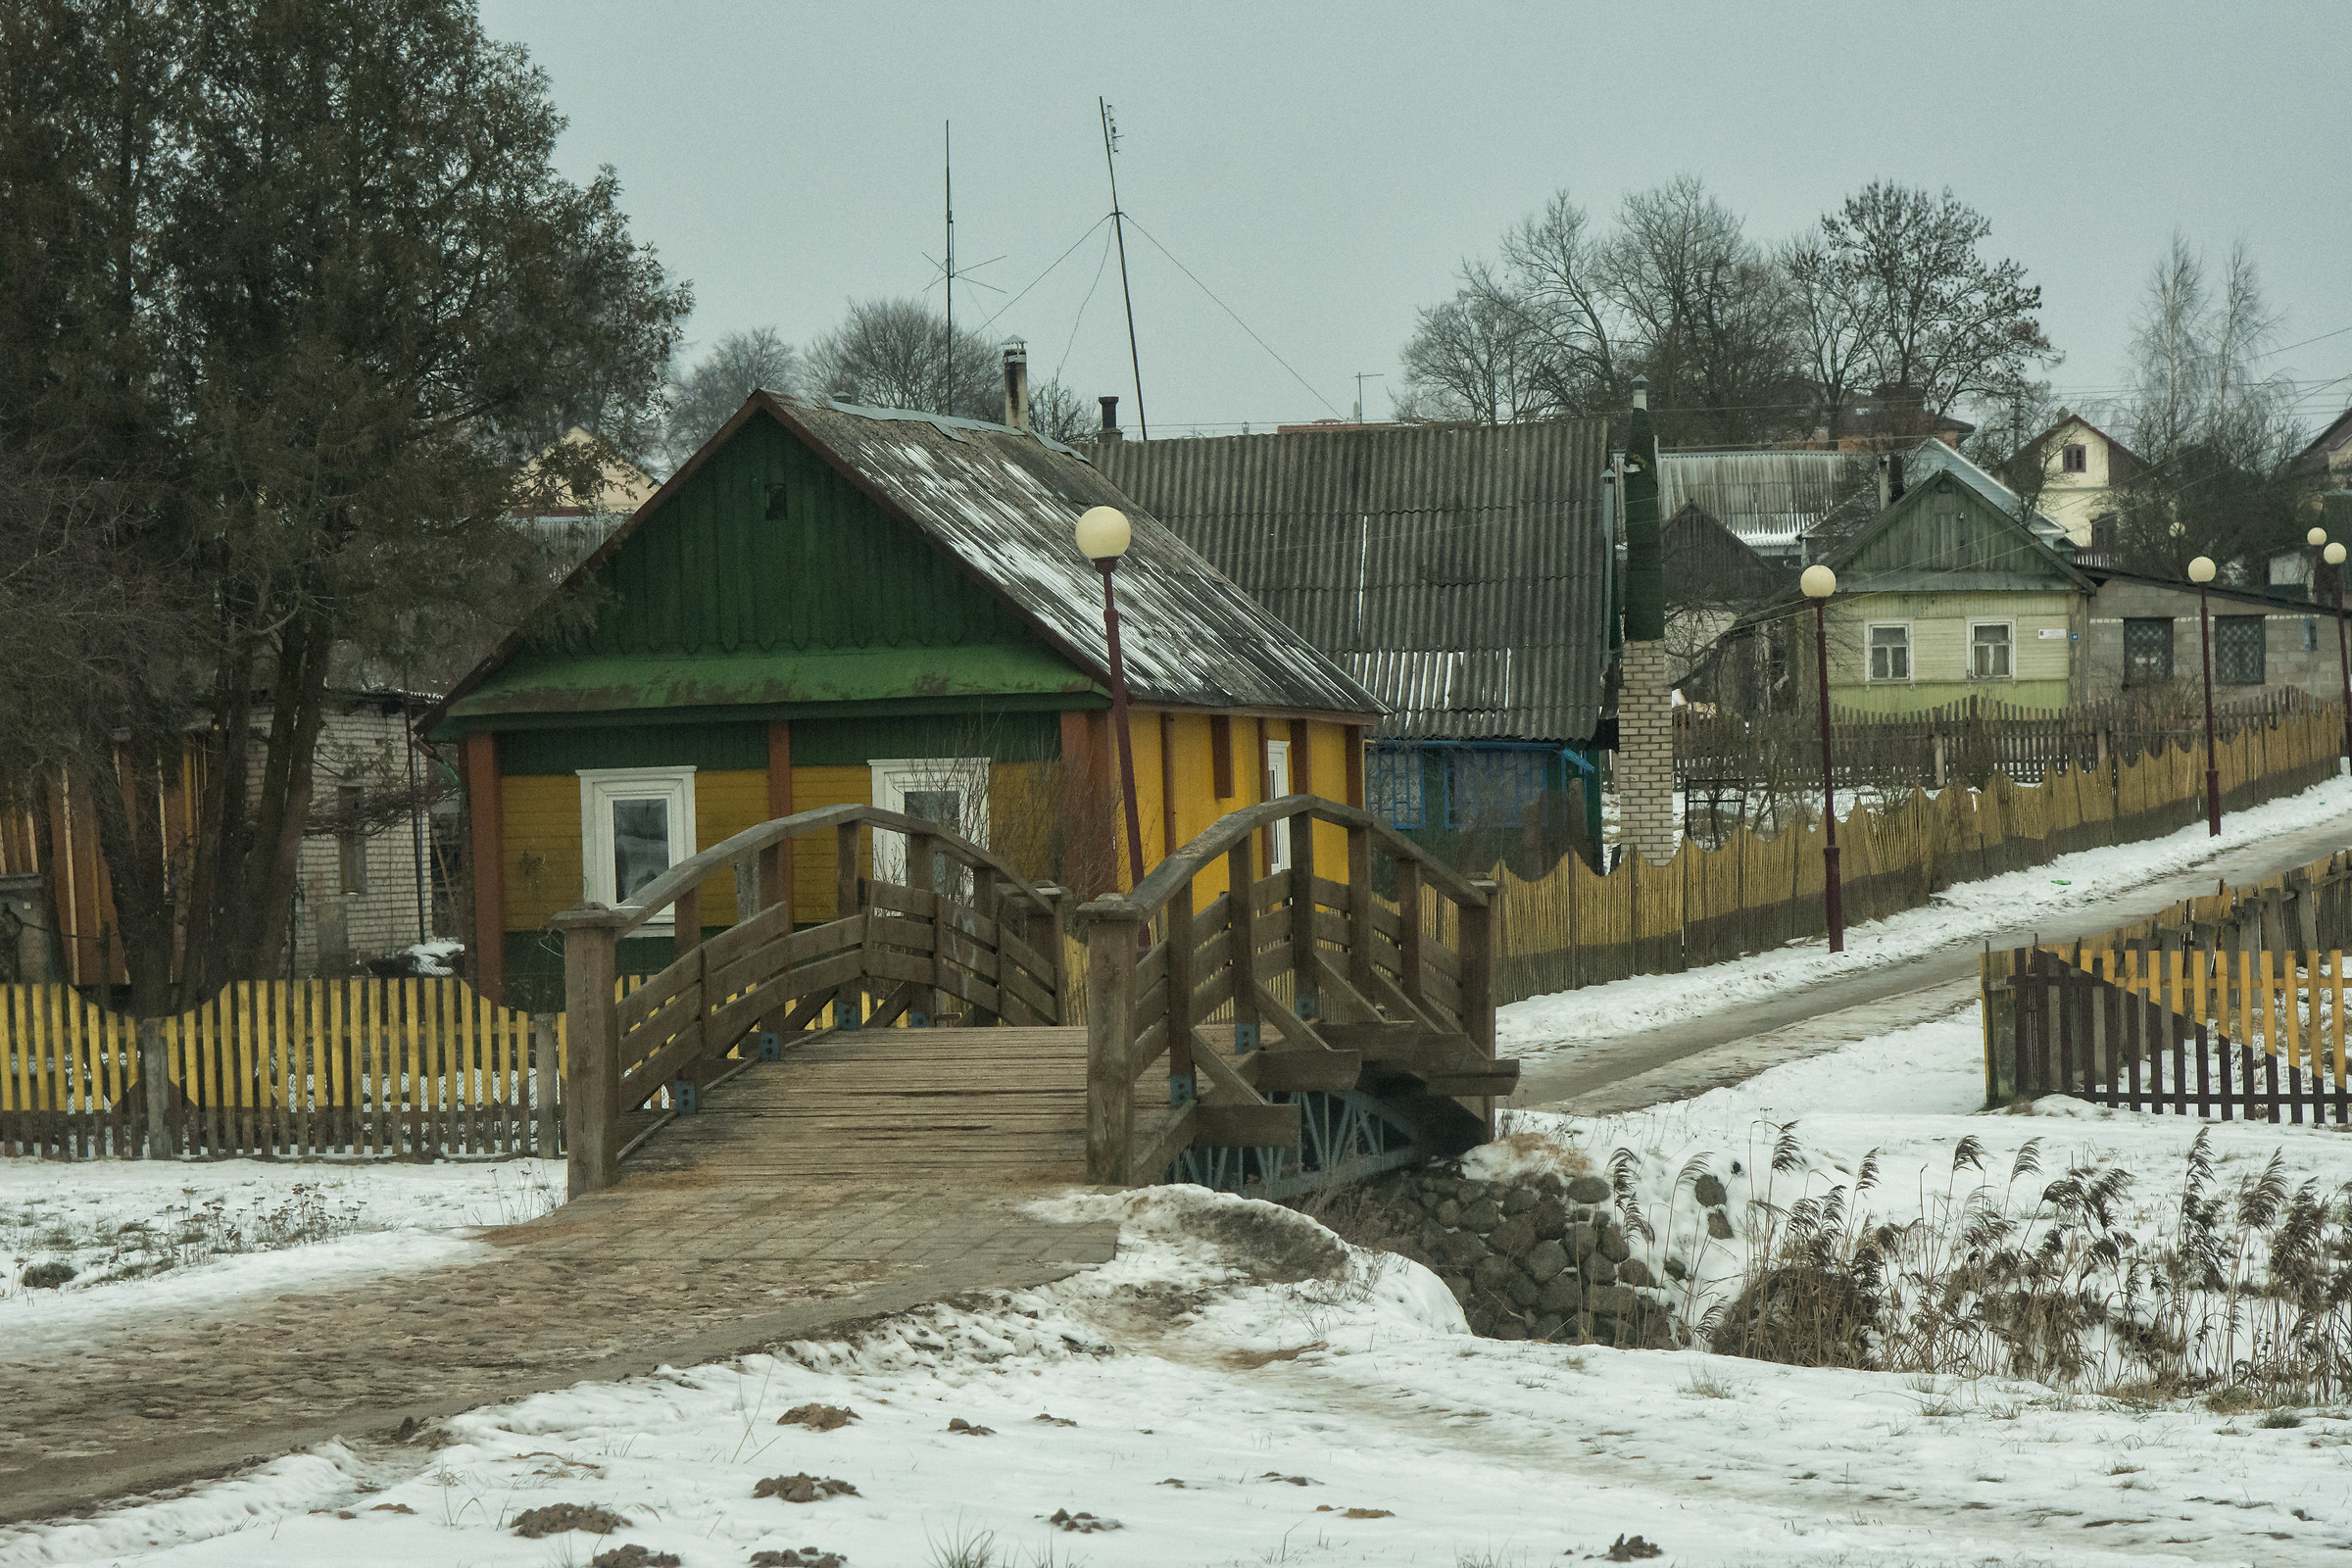 villaggio bielorusso...